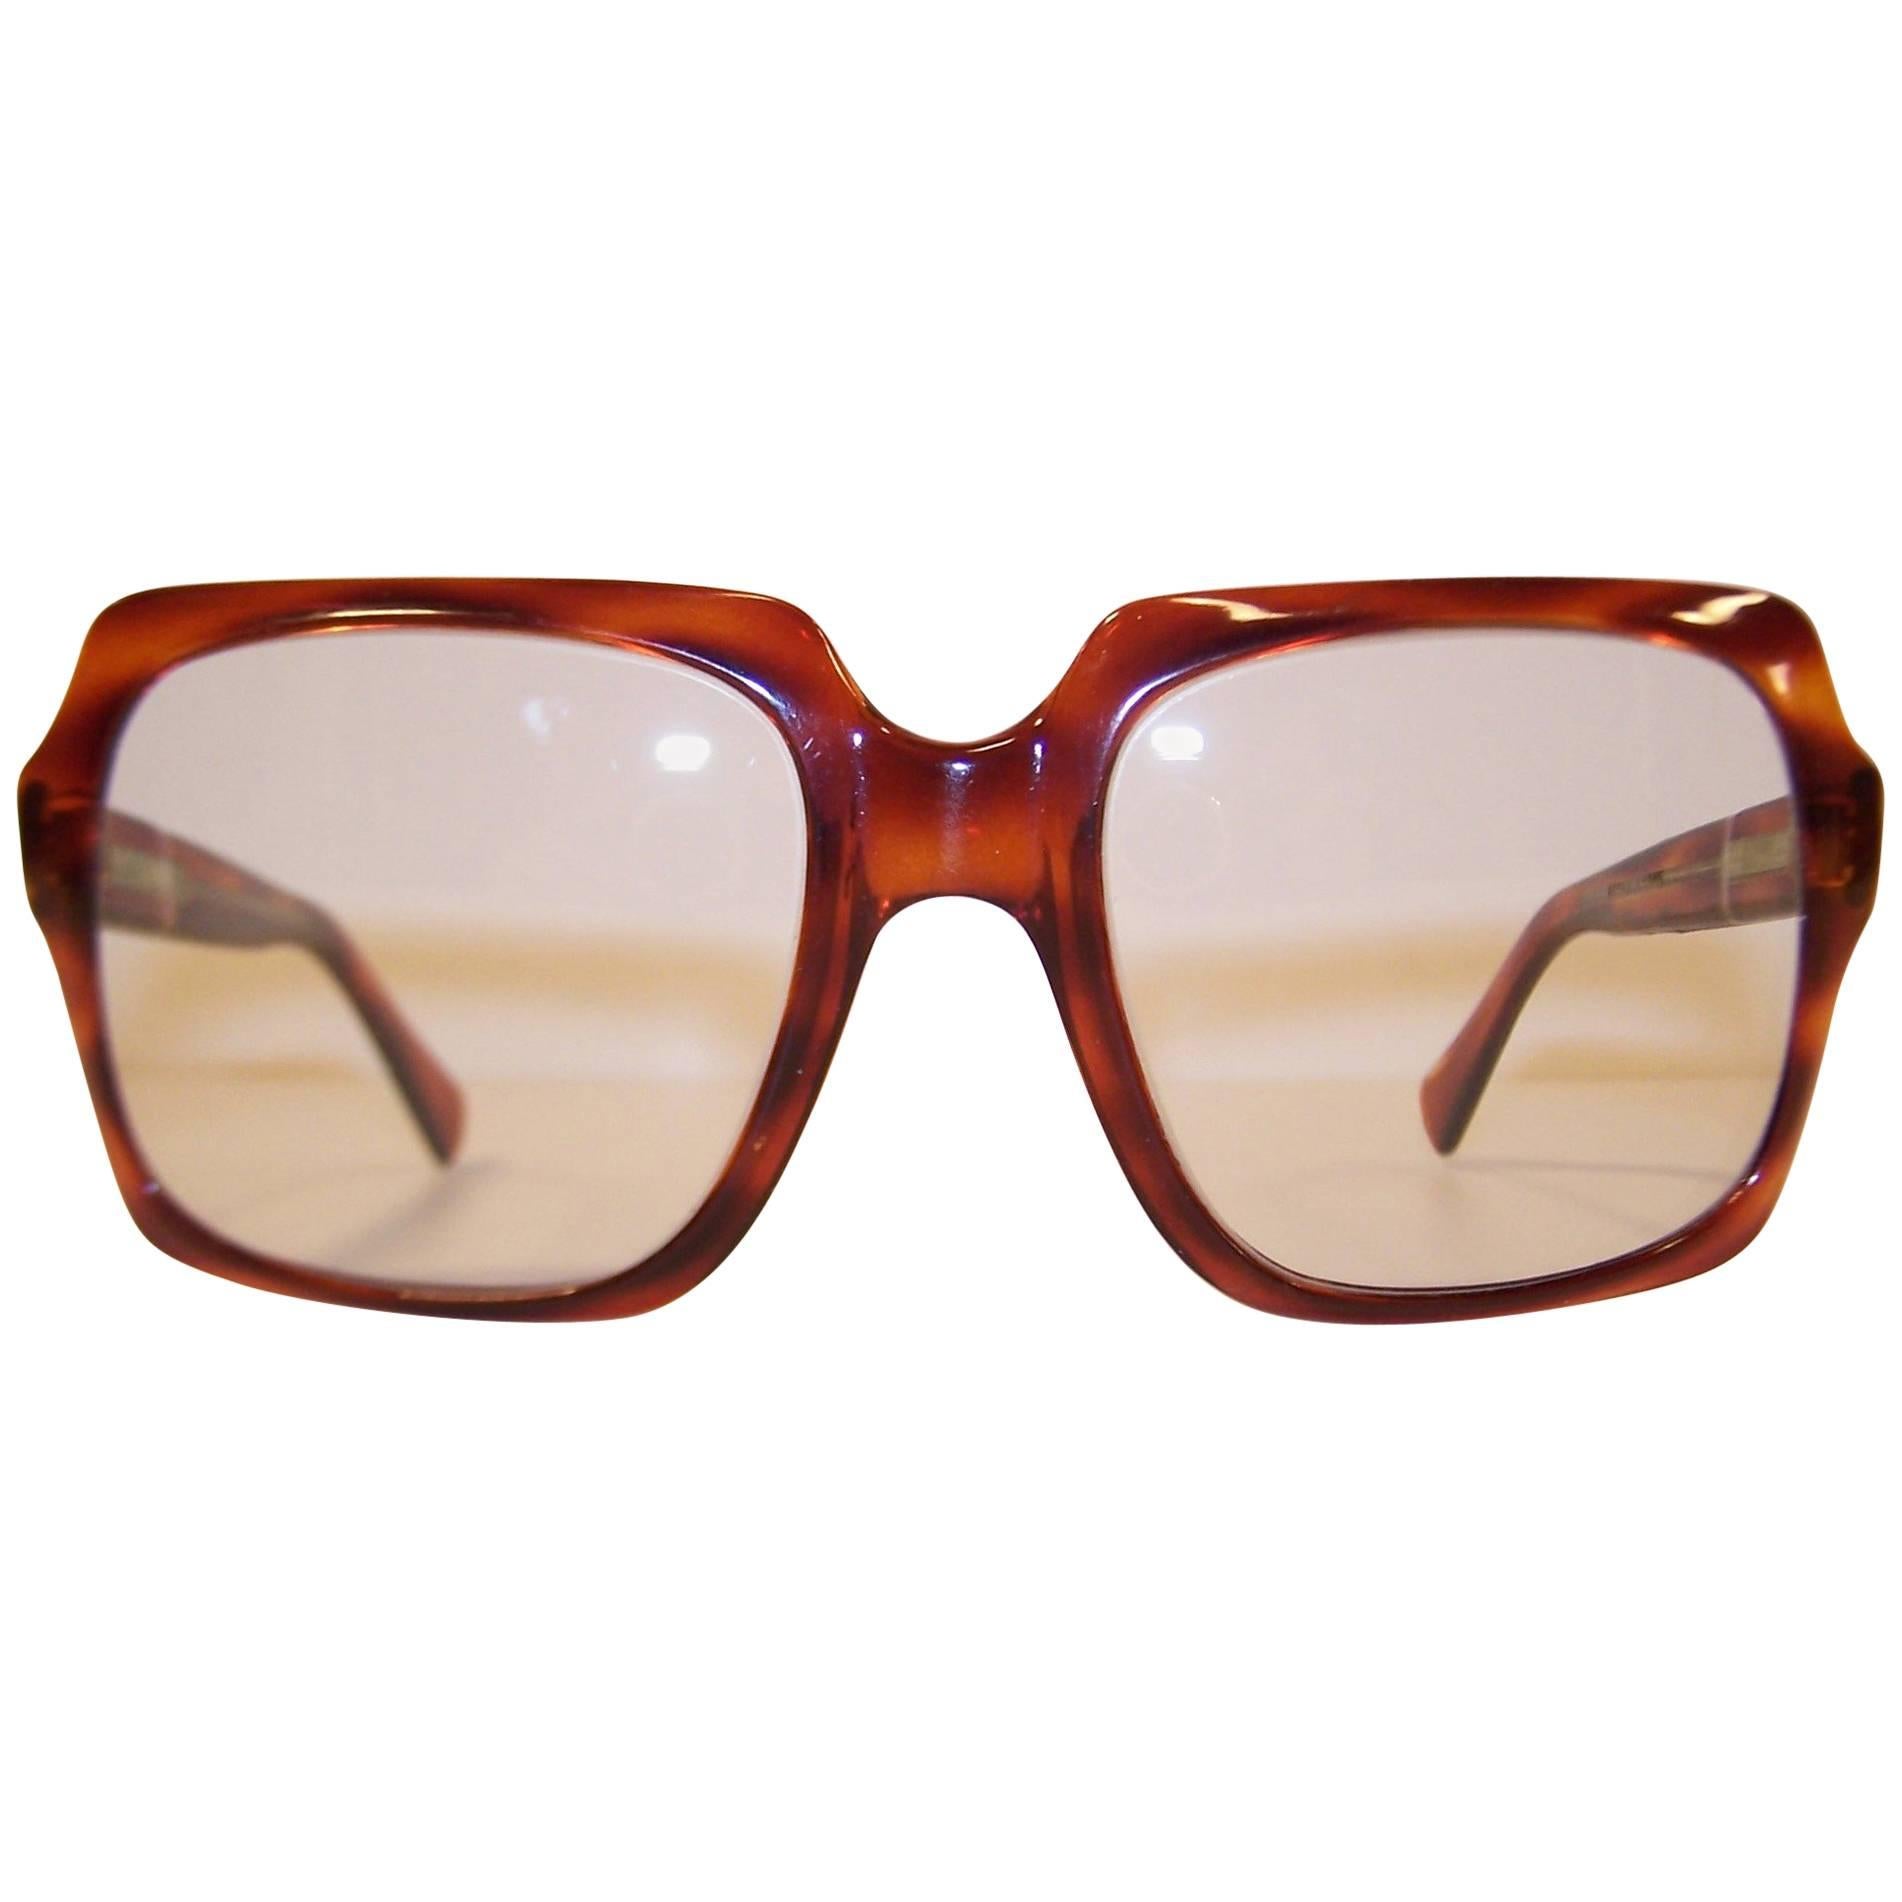 Oversized 1970's Italian Square Tortoise Eyeglasses Sunglasses